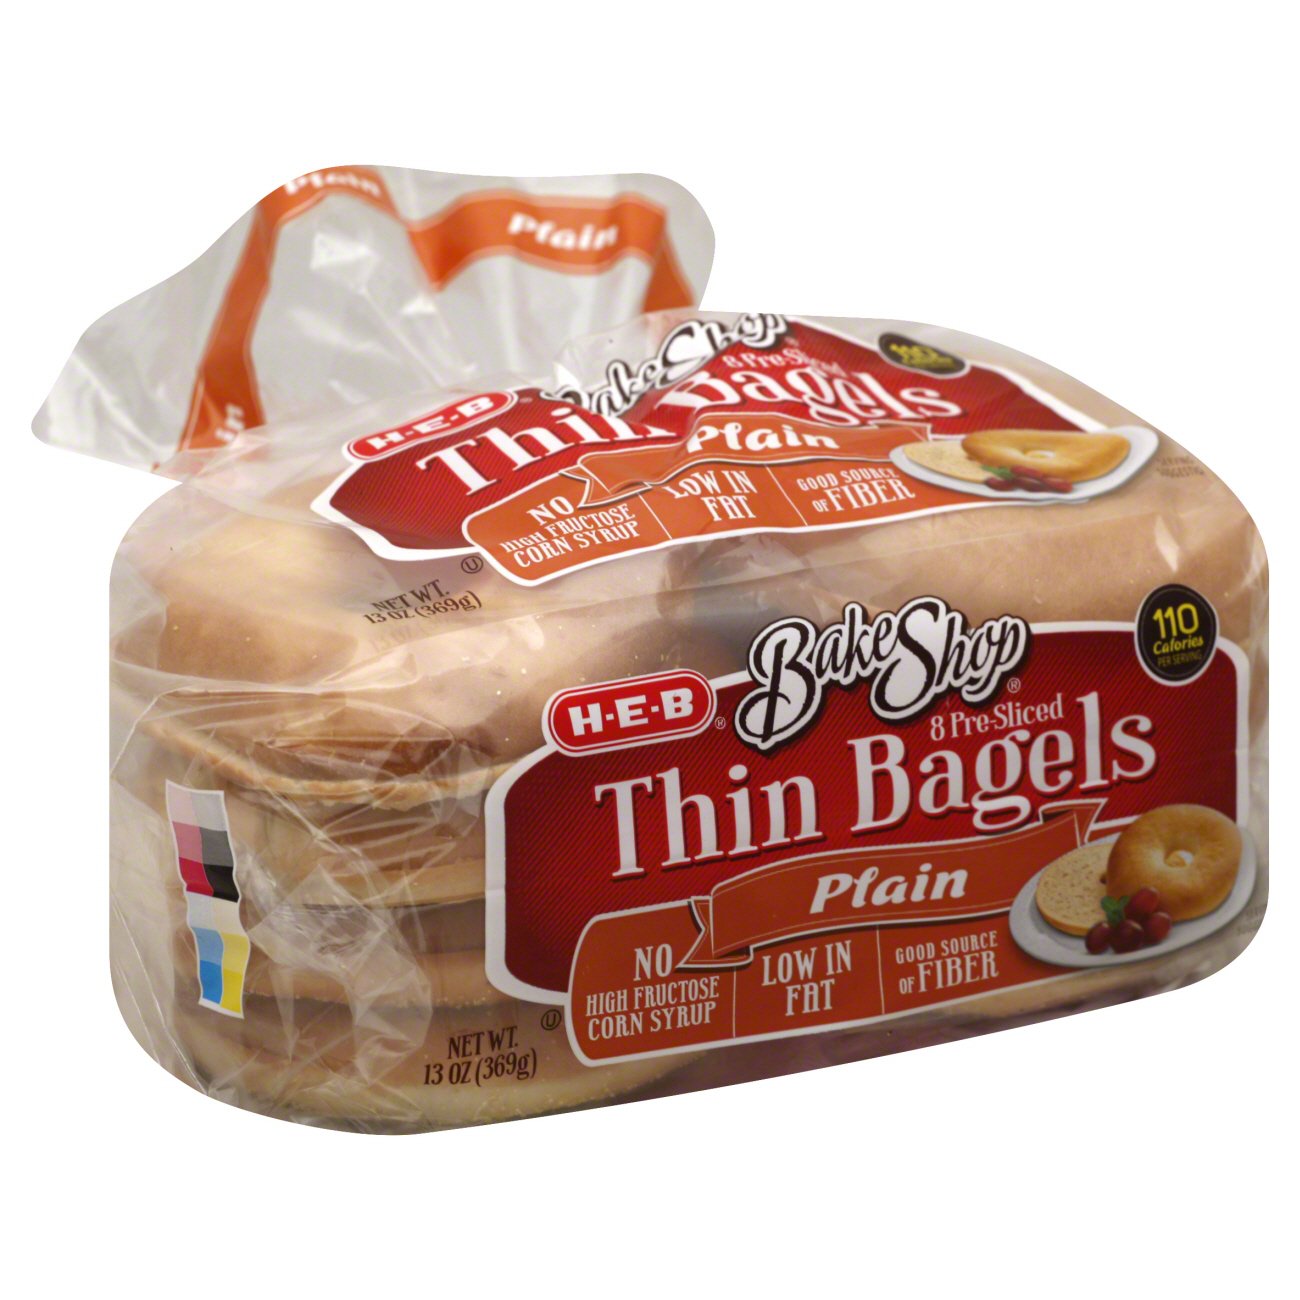 H-E-B Bake Shop Plain Thin Bagels - Shop Bread at H-E-B